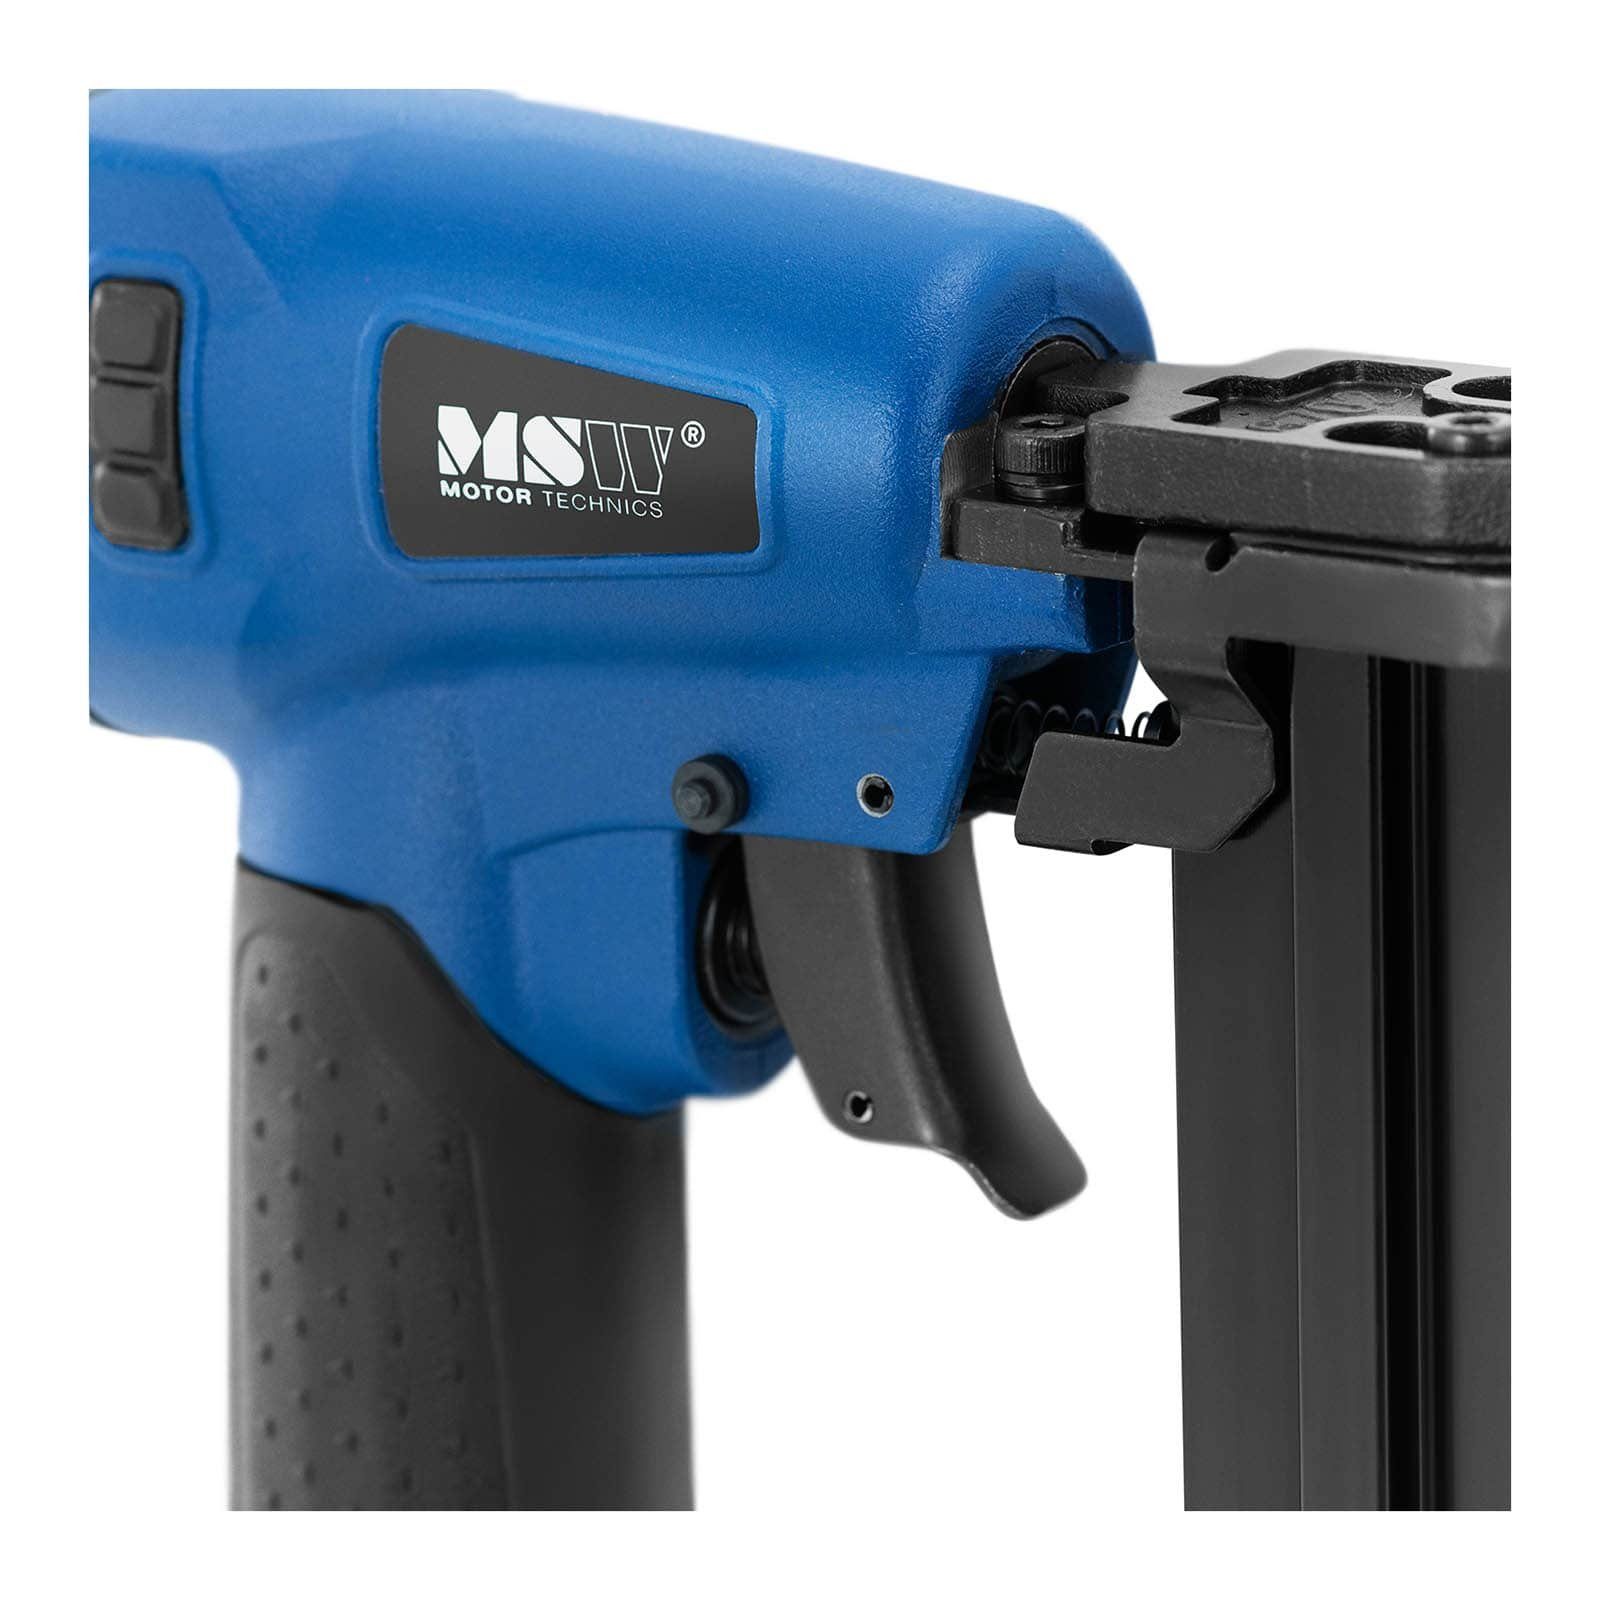 mm 120 Druckluftnagler MSW Nagler Nägel Nagelpistole Druckluft-Nagelpistole 13-35